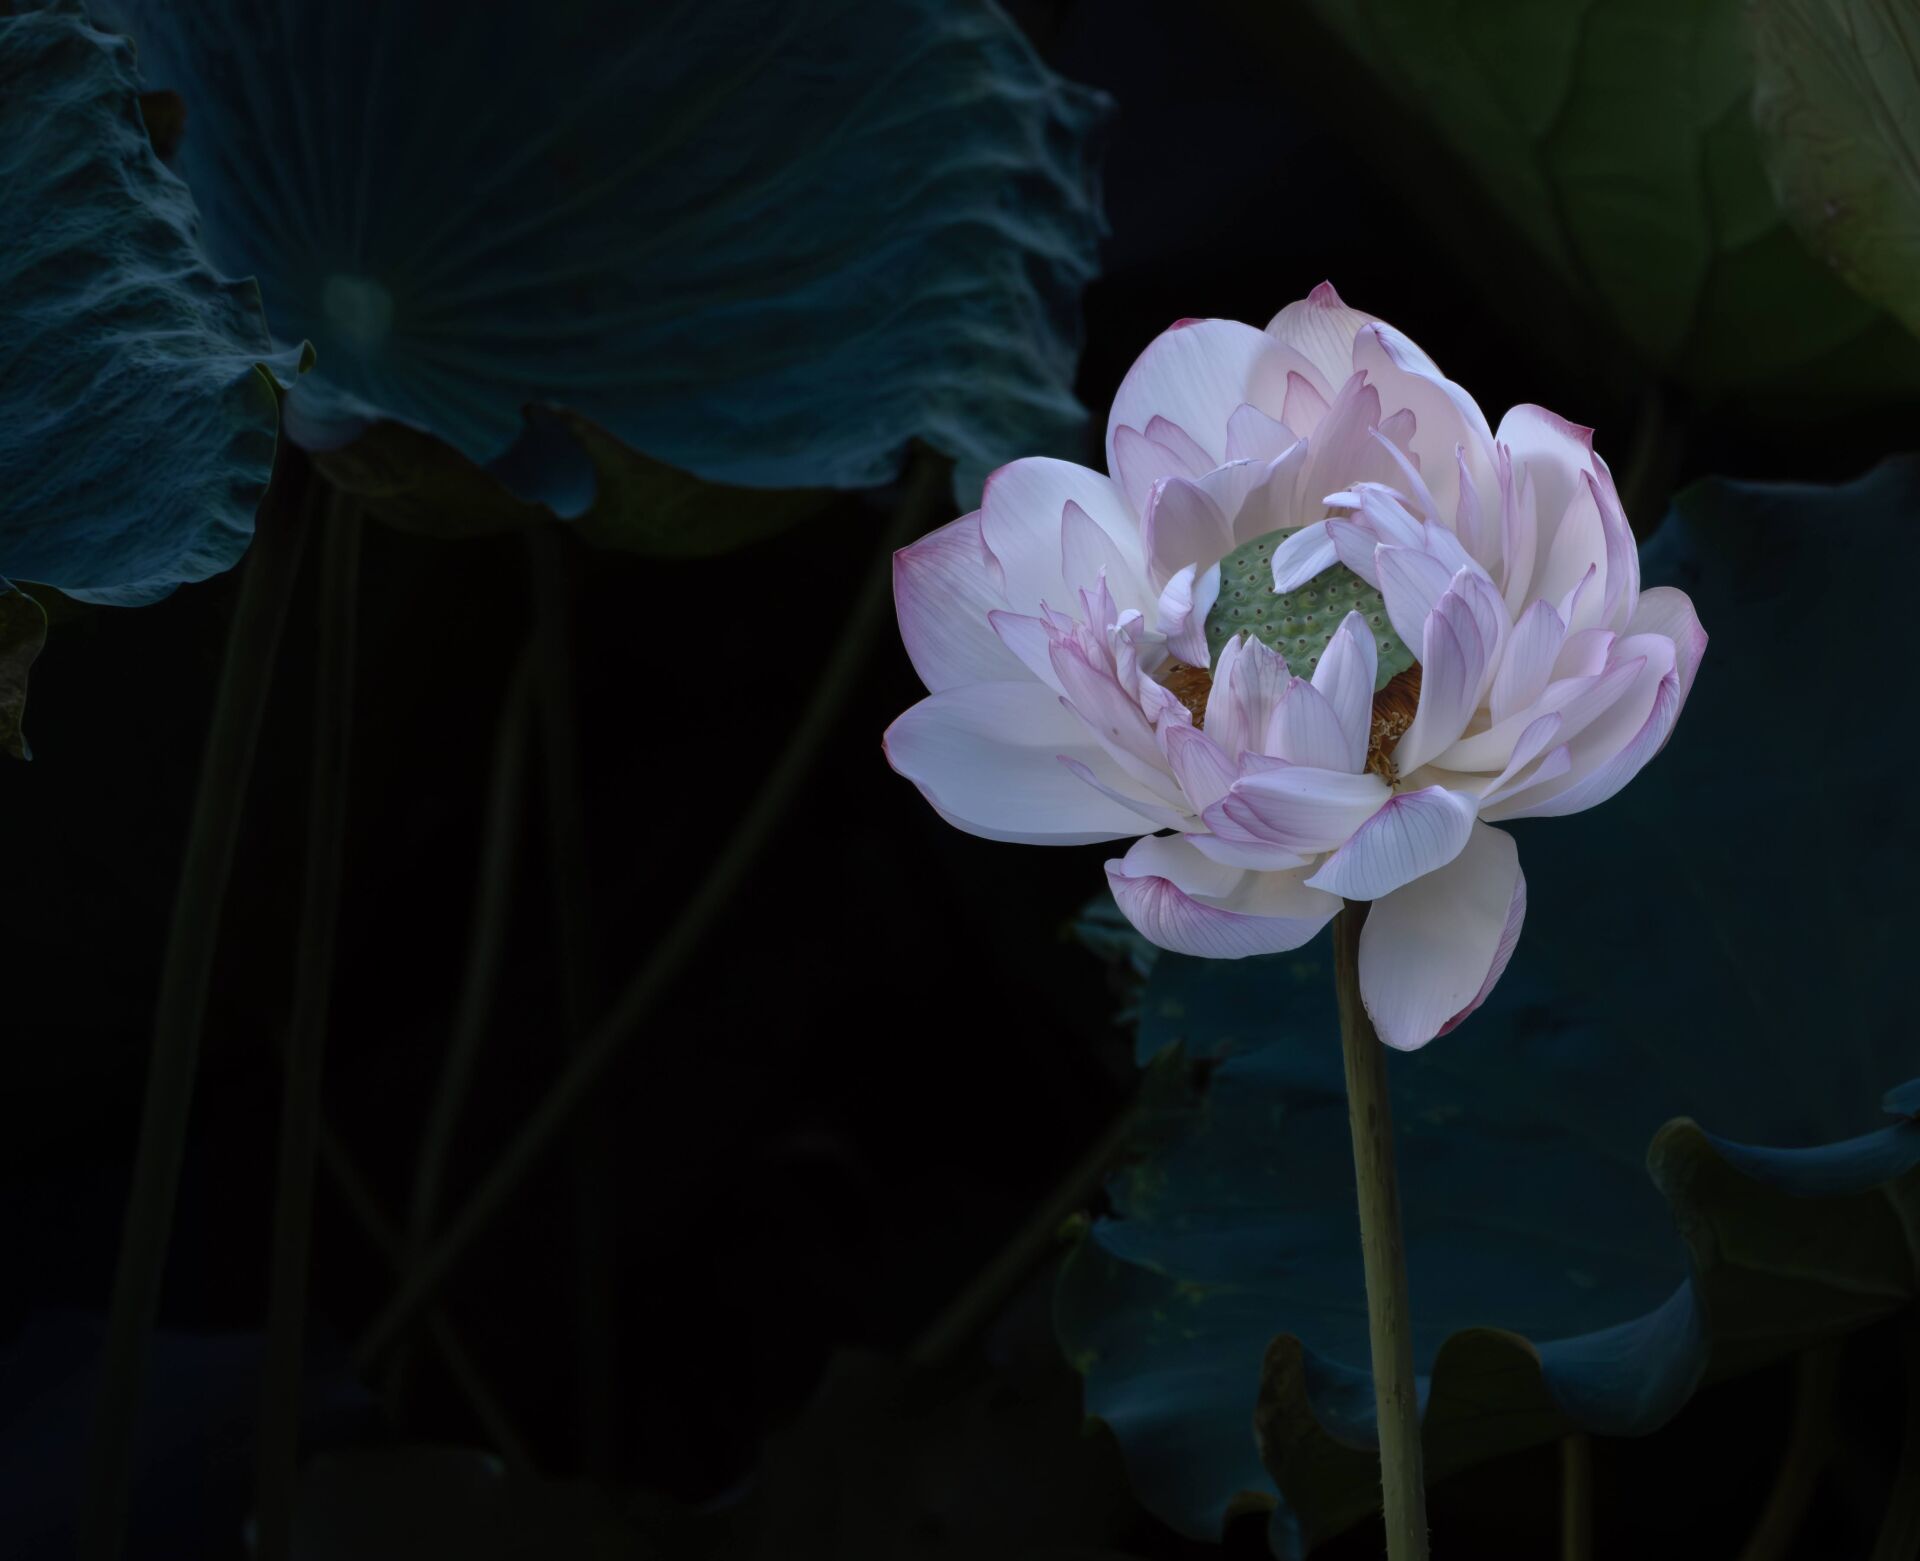 https://www.fa.gov.hk/Lotus Flower